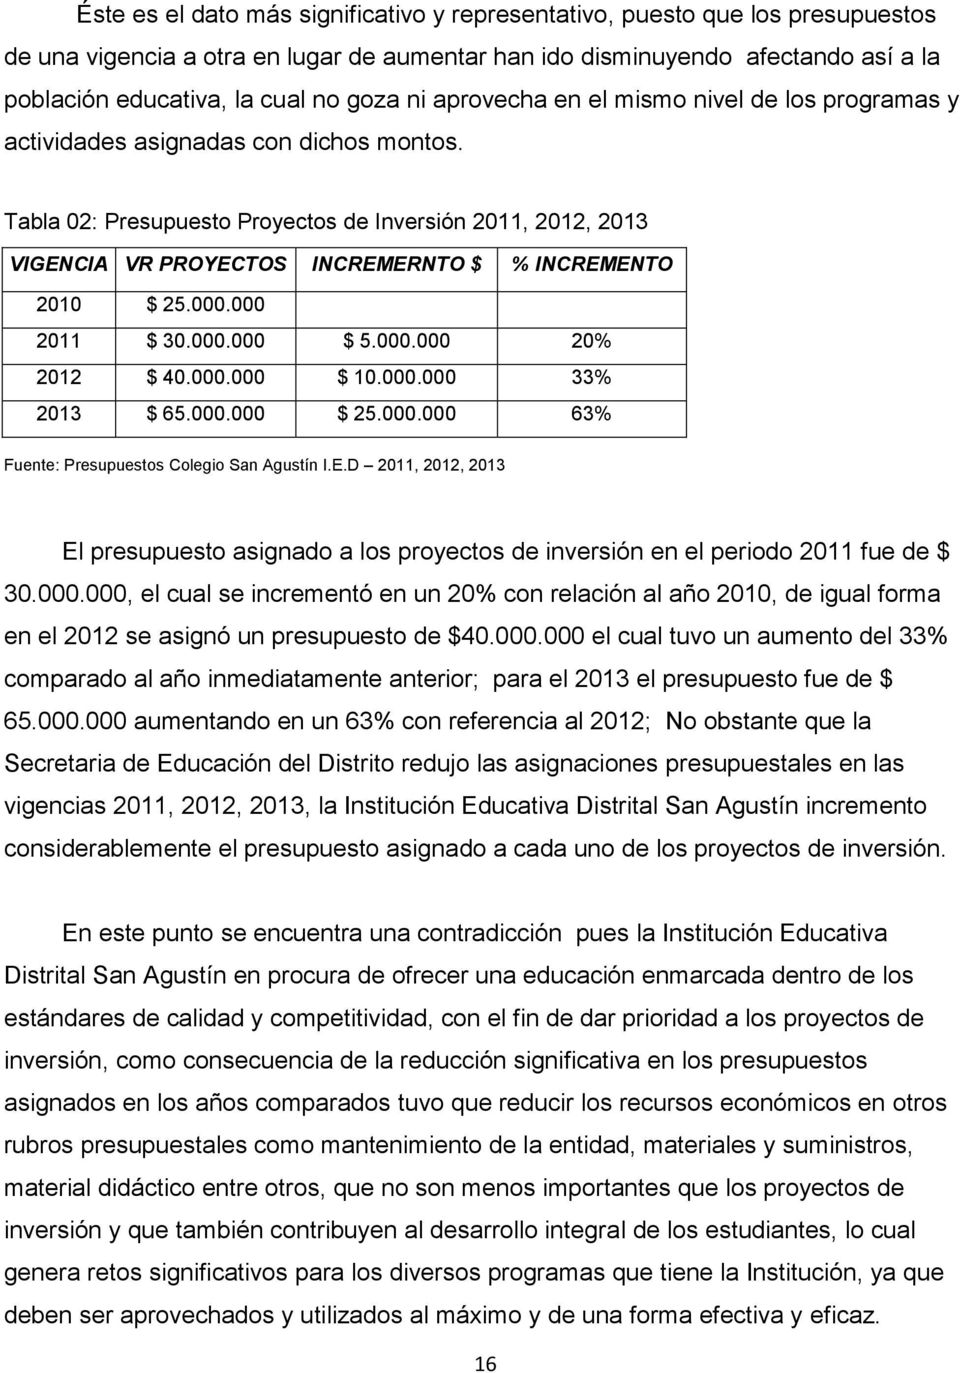 Tabla 02: Presupuesto Proyectos de Inversión 2011, 2012, 2013 VIGENCIA VR PROYECTOS INCREMERNTO $ % INCREMENTO 2010 $ 25.000.000 2011 $ 30.000.000 $ 5.000.000 20% 2012 $ 40.000.000 $ 10.000.000 33% 2013 $ 65.